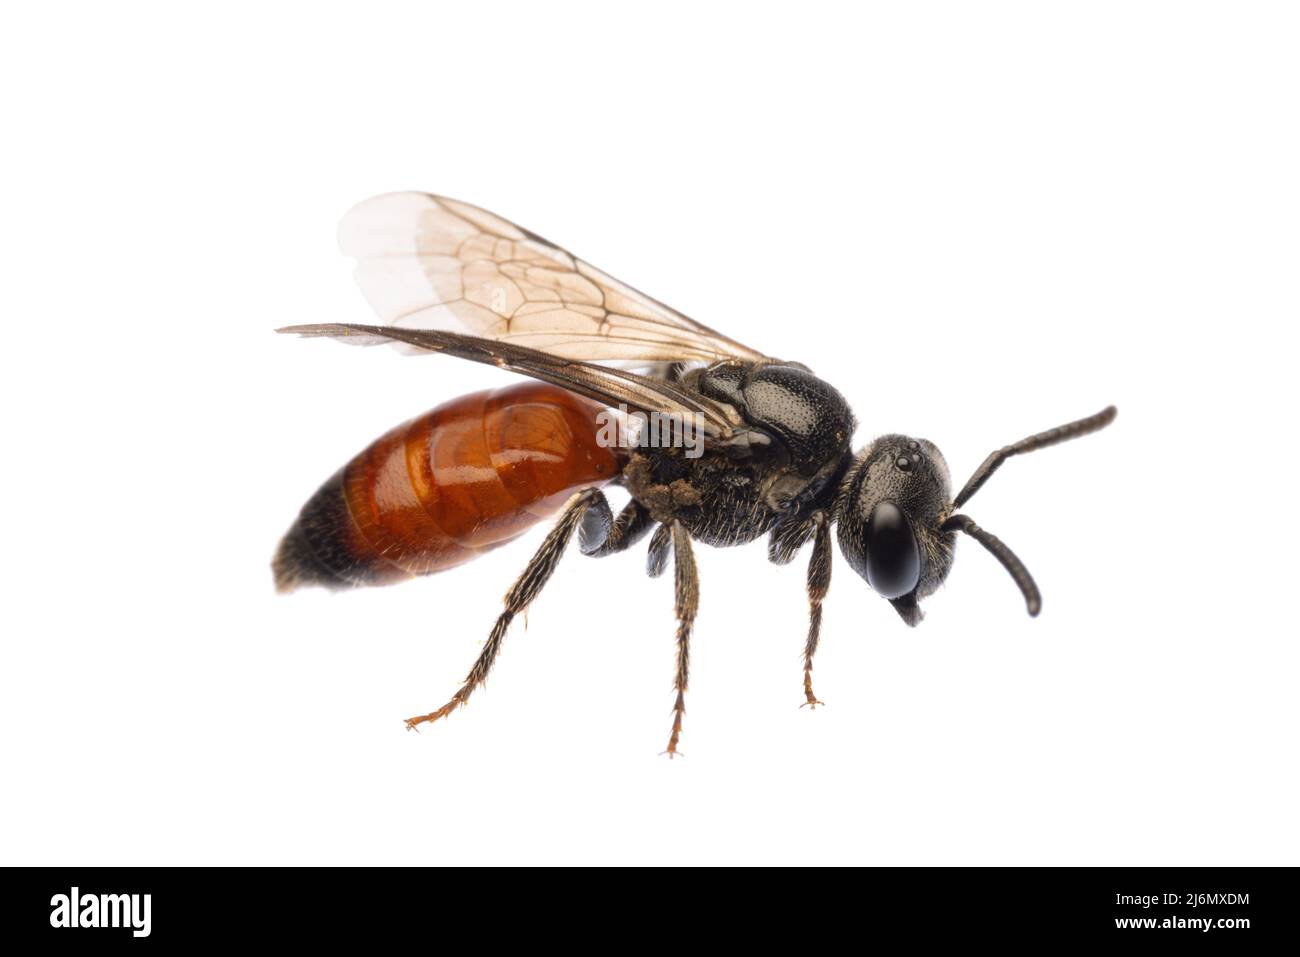 Insectos de europa - abejas: Vista lateral de la sangre de abejas Especodos (blutbiene alemán) aislados sobre fondo blanco Foto de stock